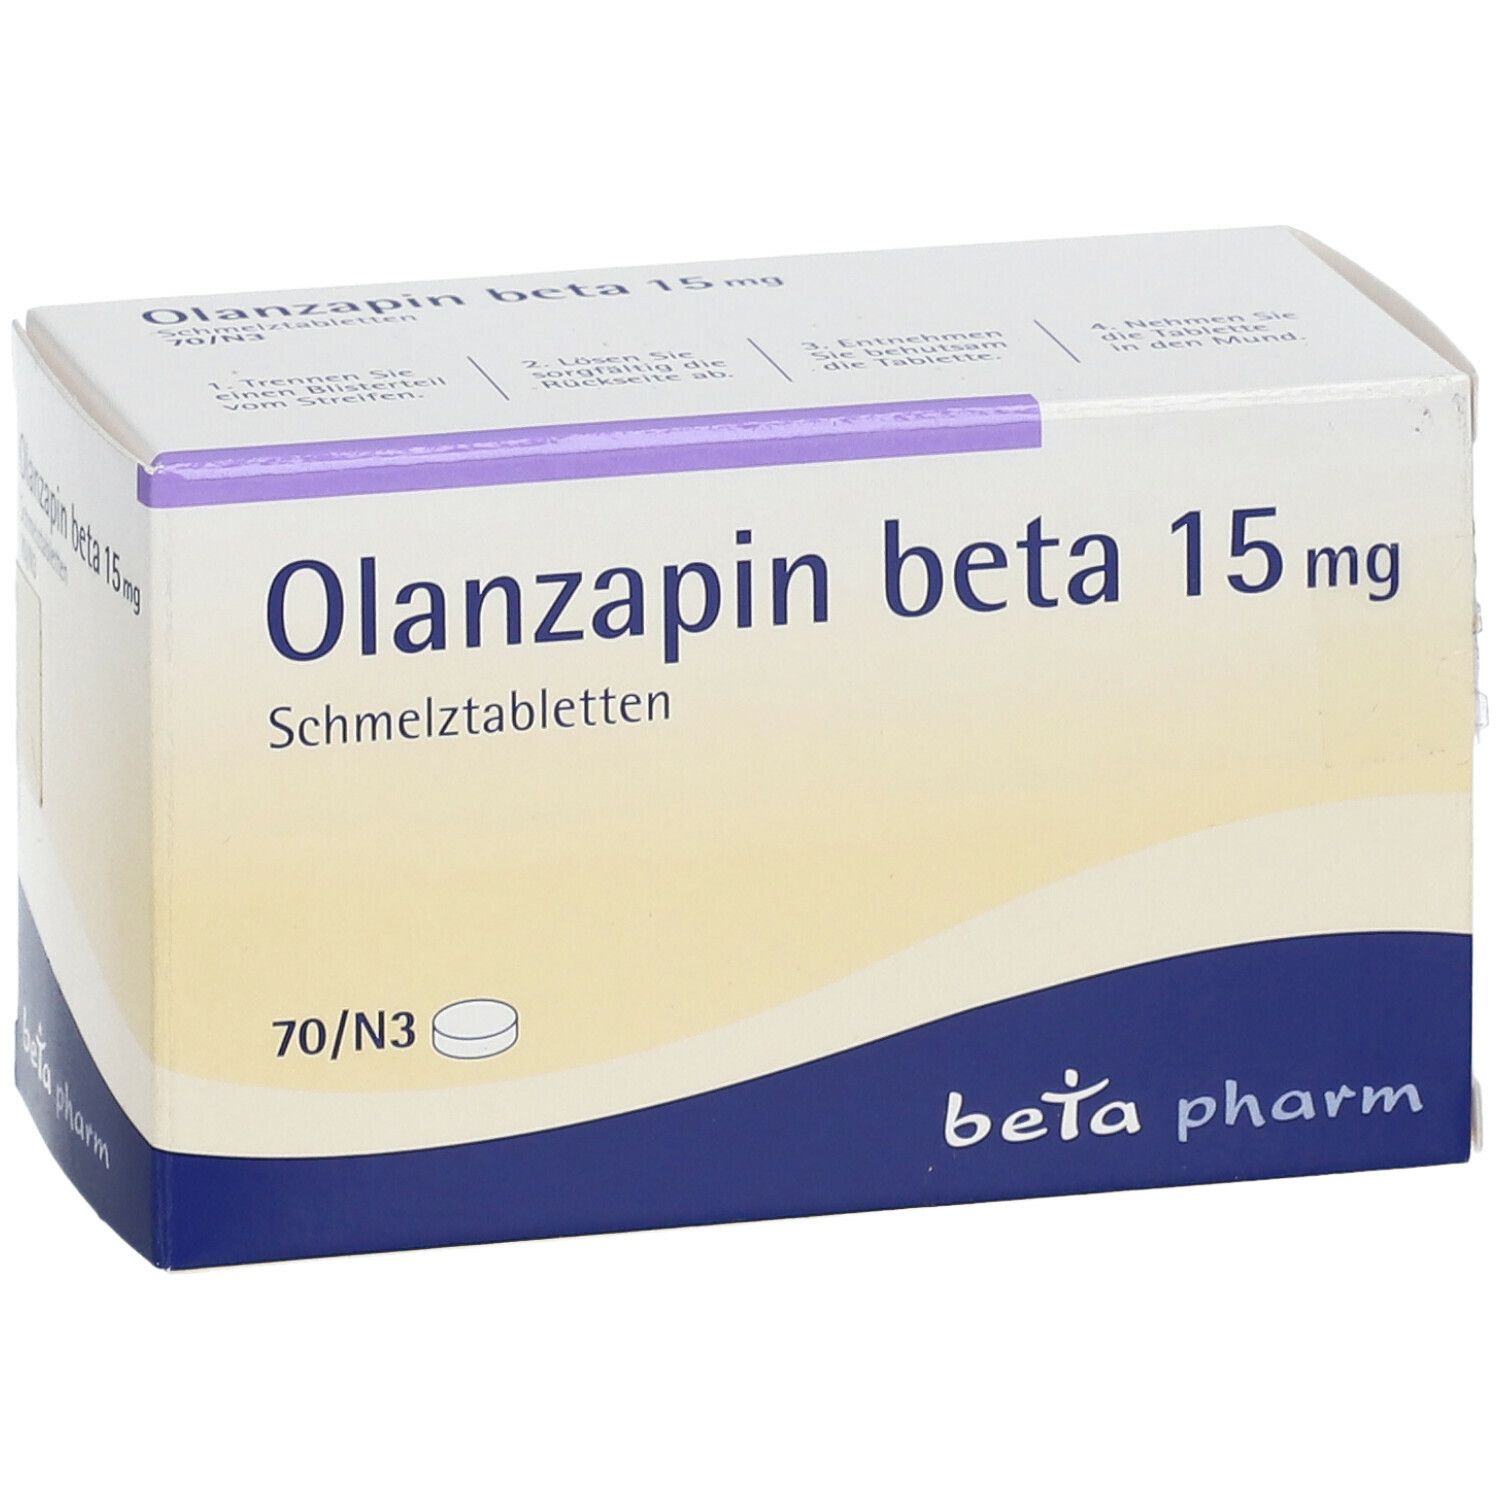 Olanzapin beta 15 mg Schmelztabletten